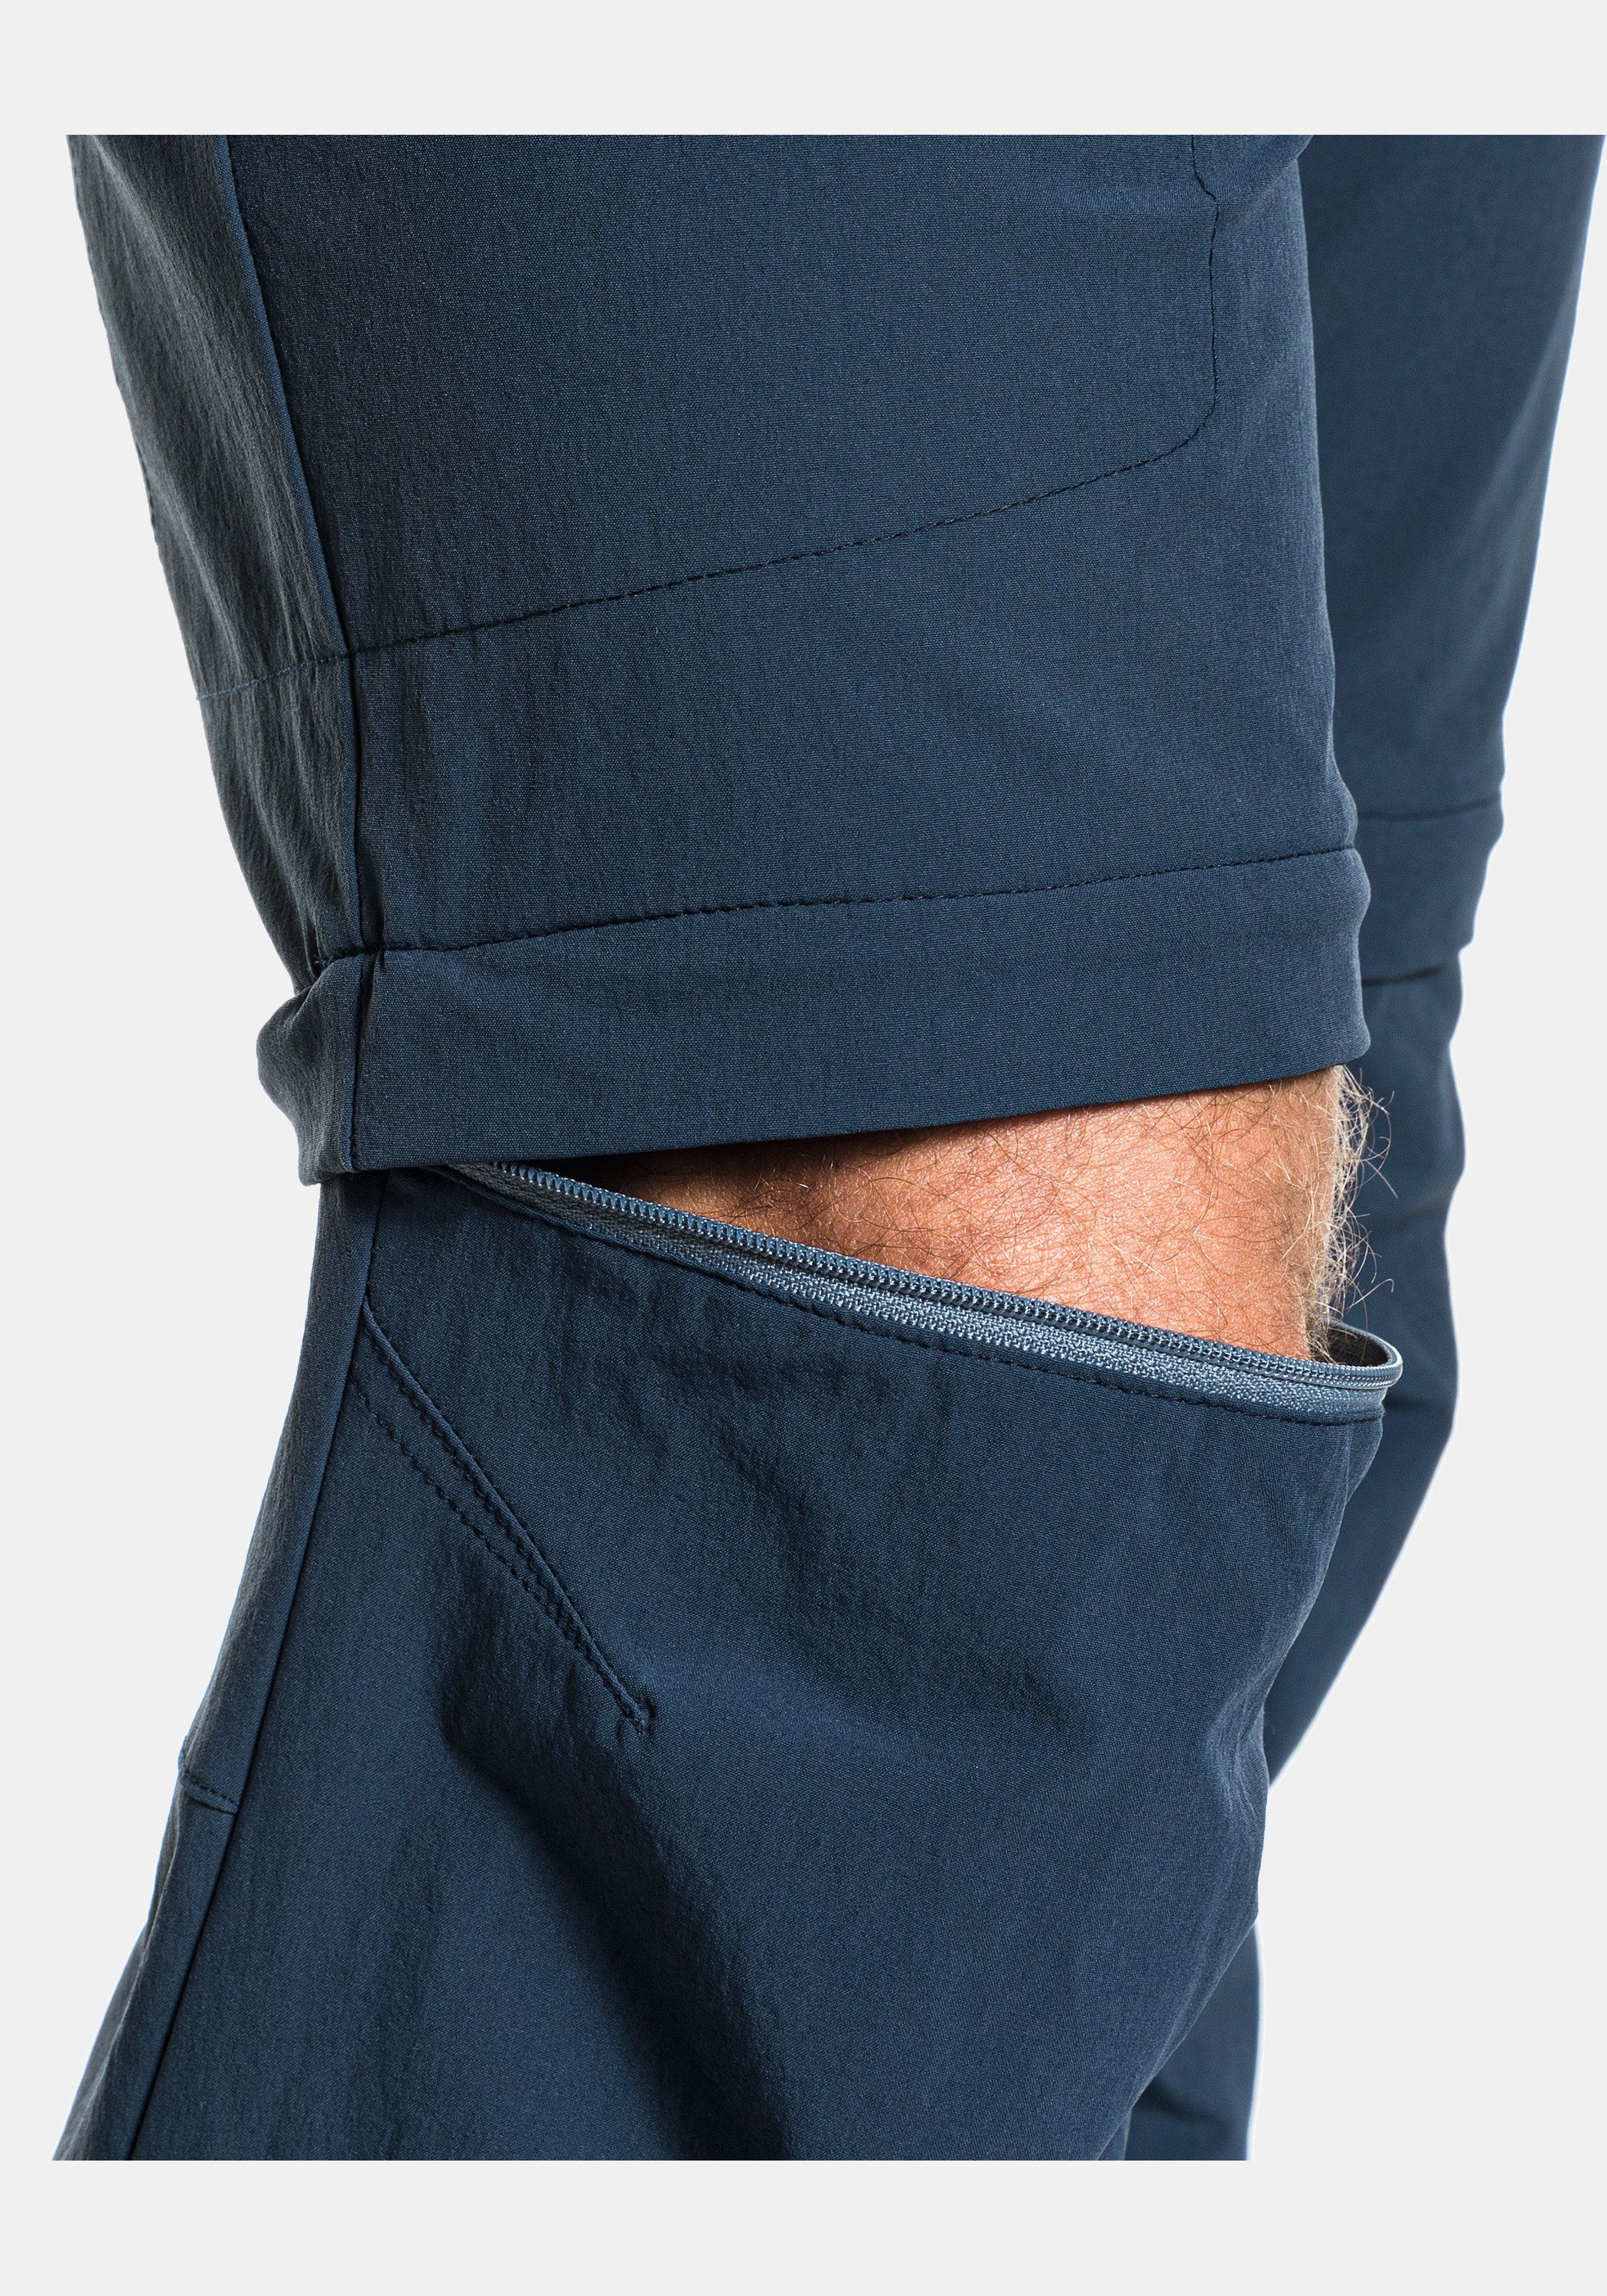 Koper1 Zip-away-Hose Off Pants Schöffel Zip dunkelblau